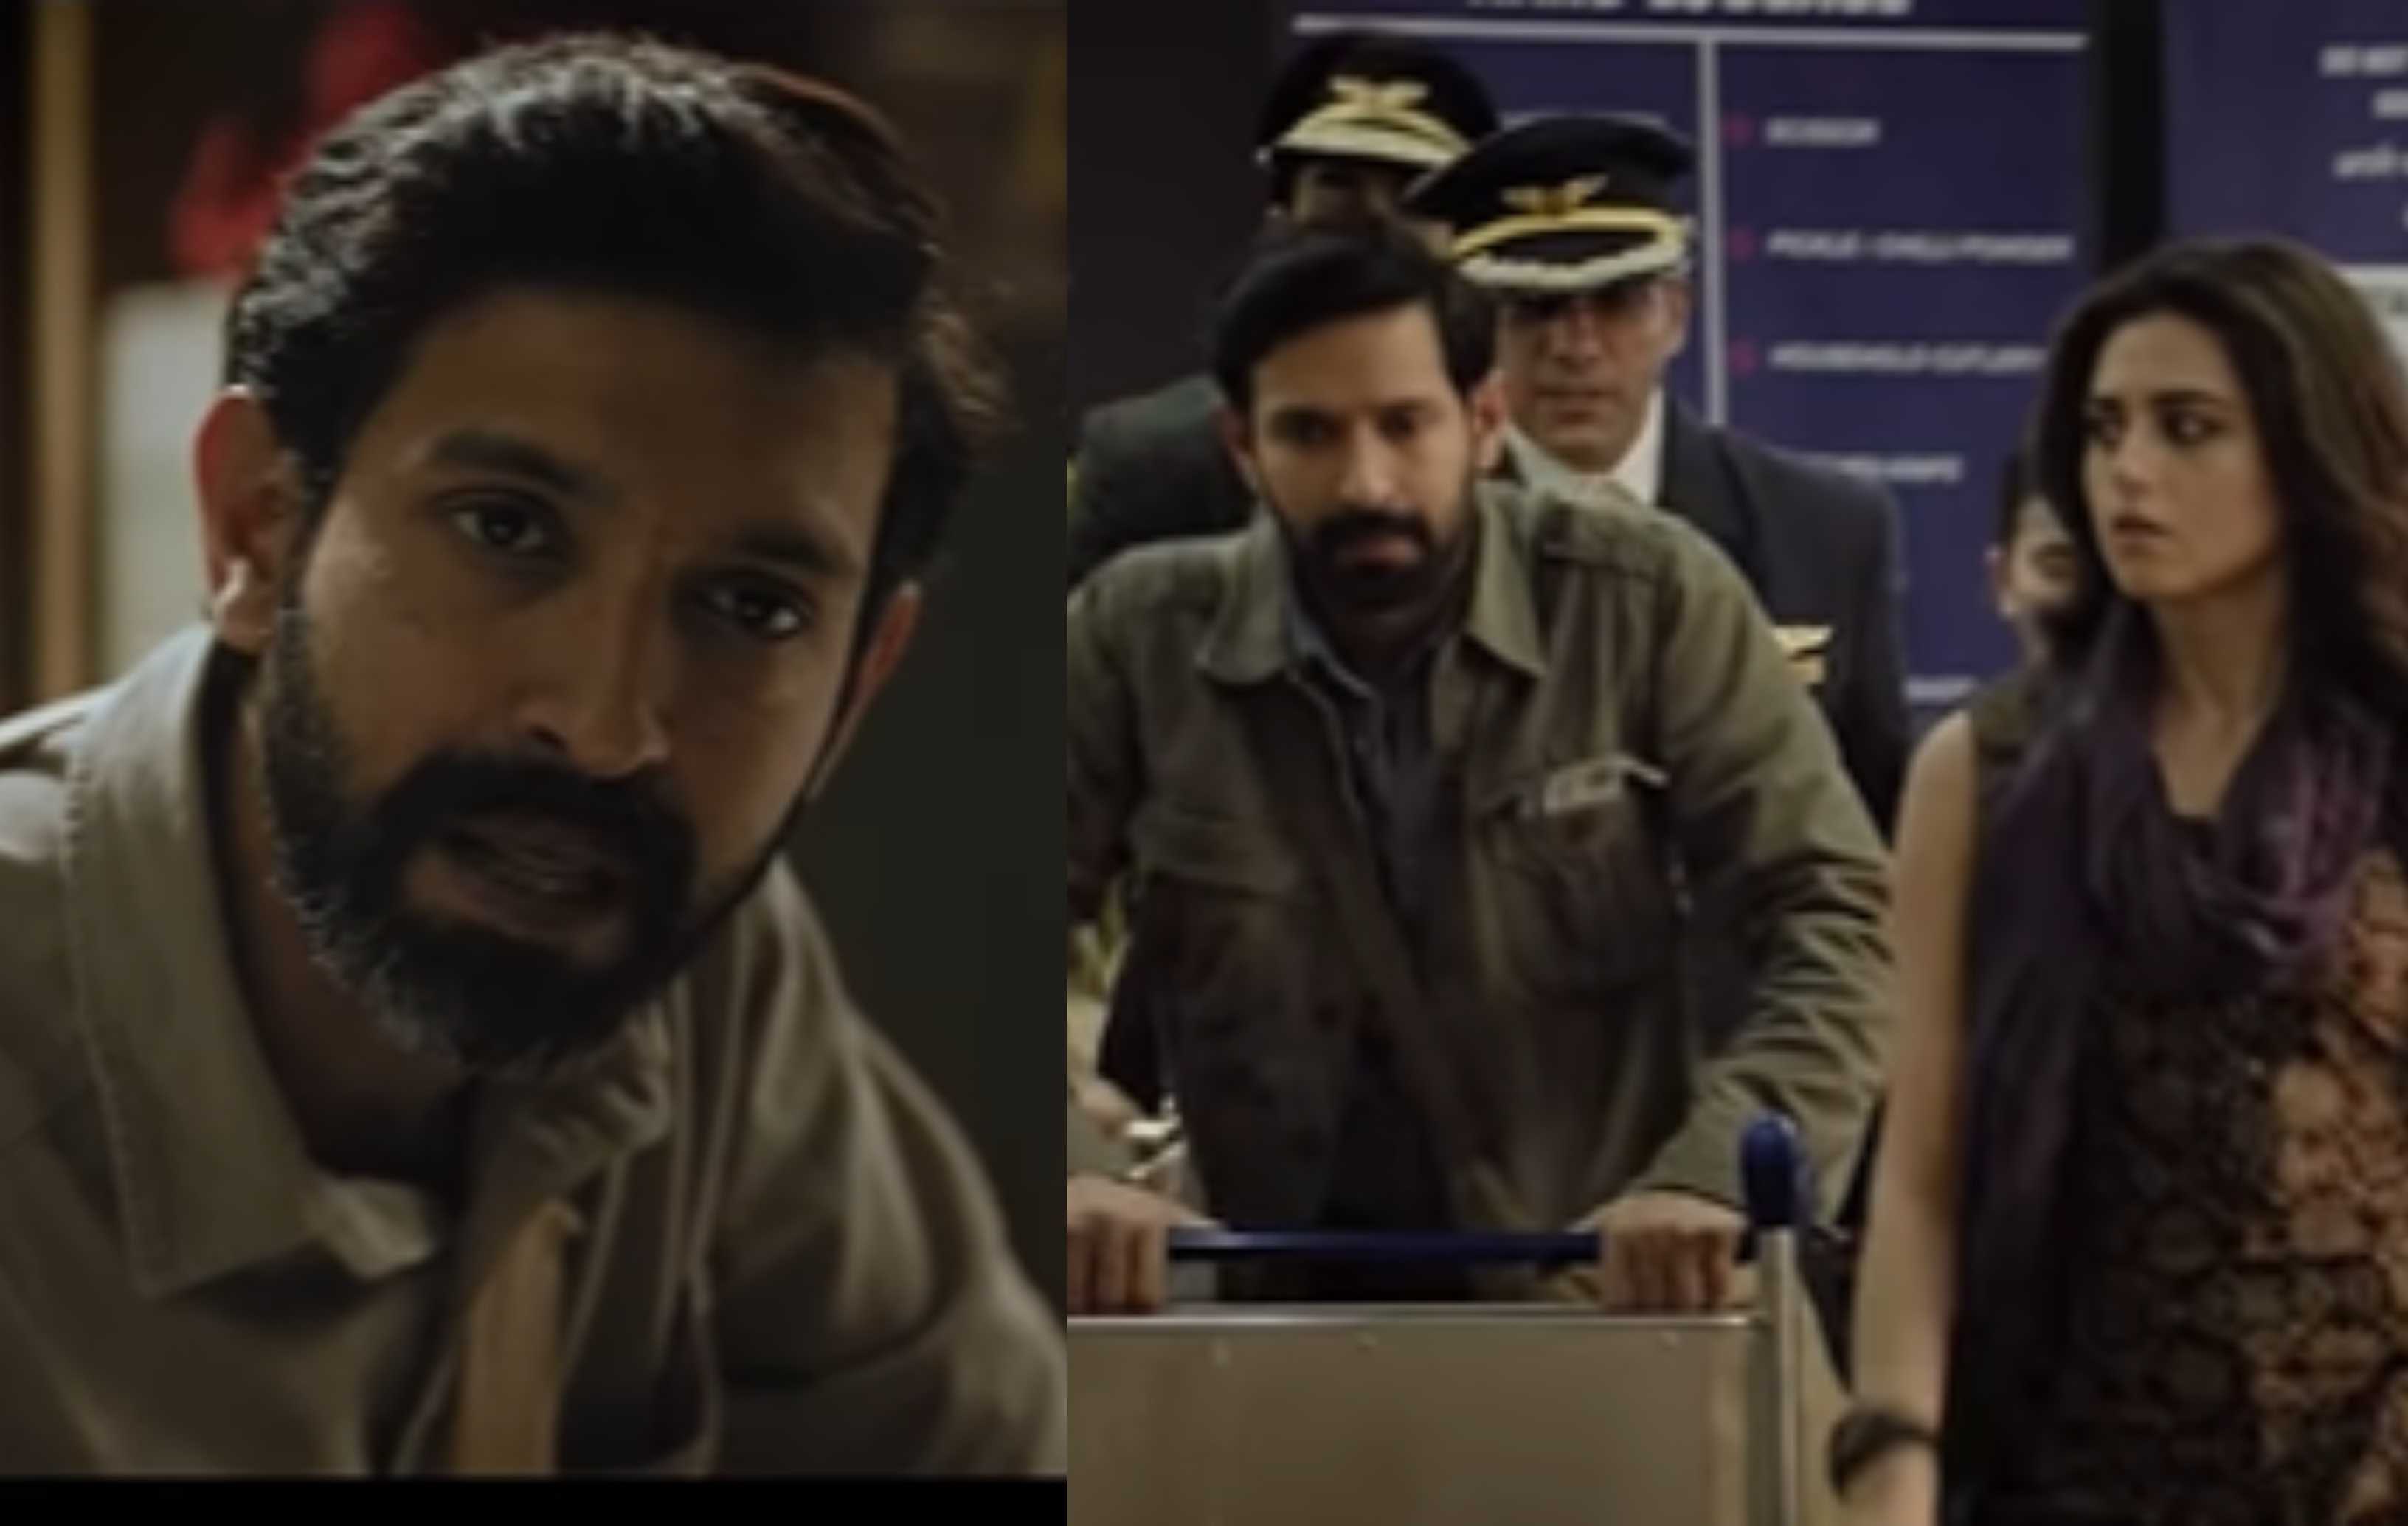 The Sabarmati Report Teaser: विक्रांत मैसी ने गोधरा कांड पर बनी इस फिल्म में उठाया इंडिया-भारत डिबेट का मुद्दा, जलती ट्रेन रुला देगी